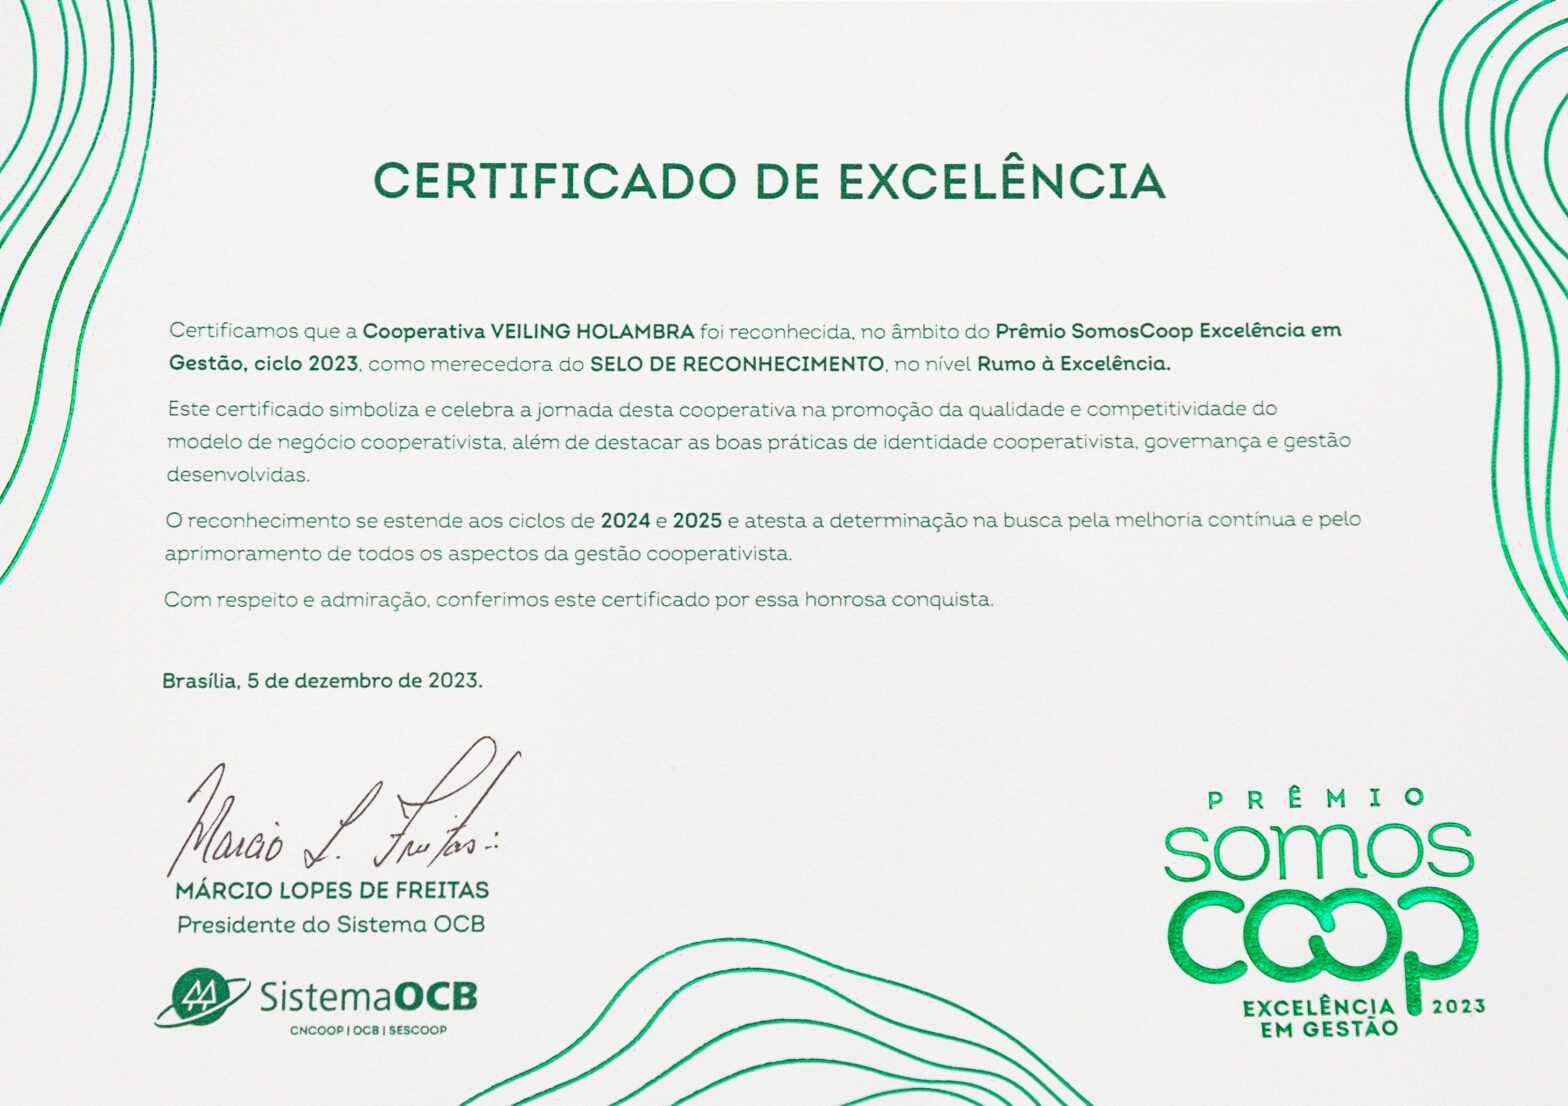 Prêmio SomosCoop Excelência em Gestão